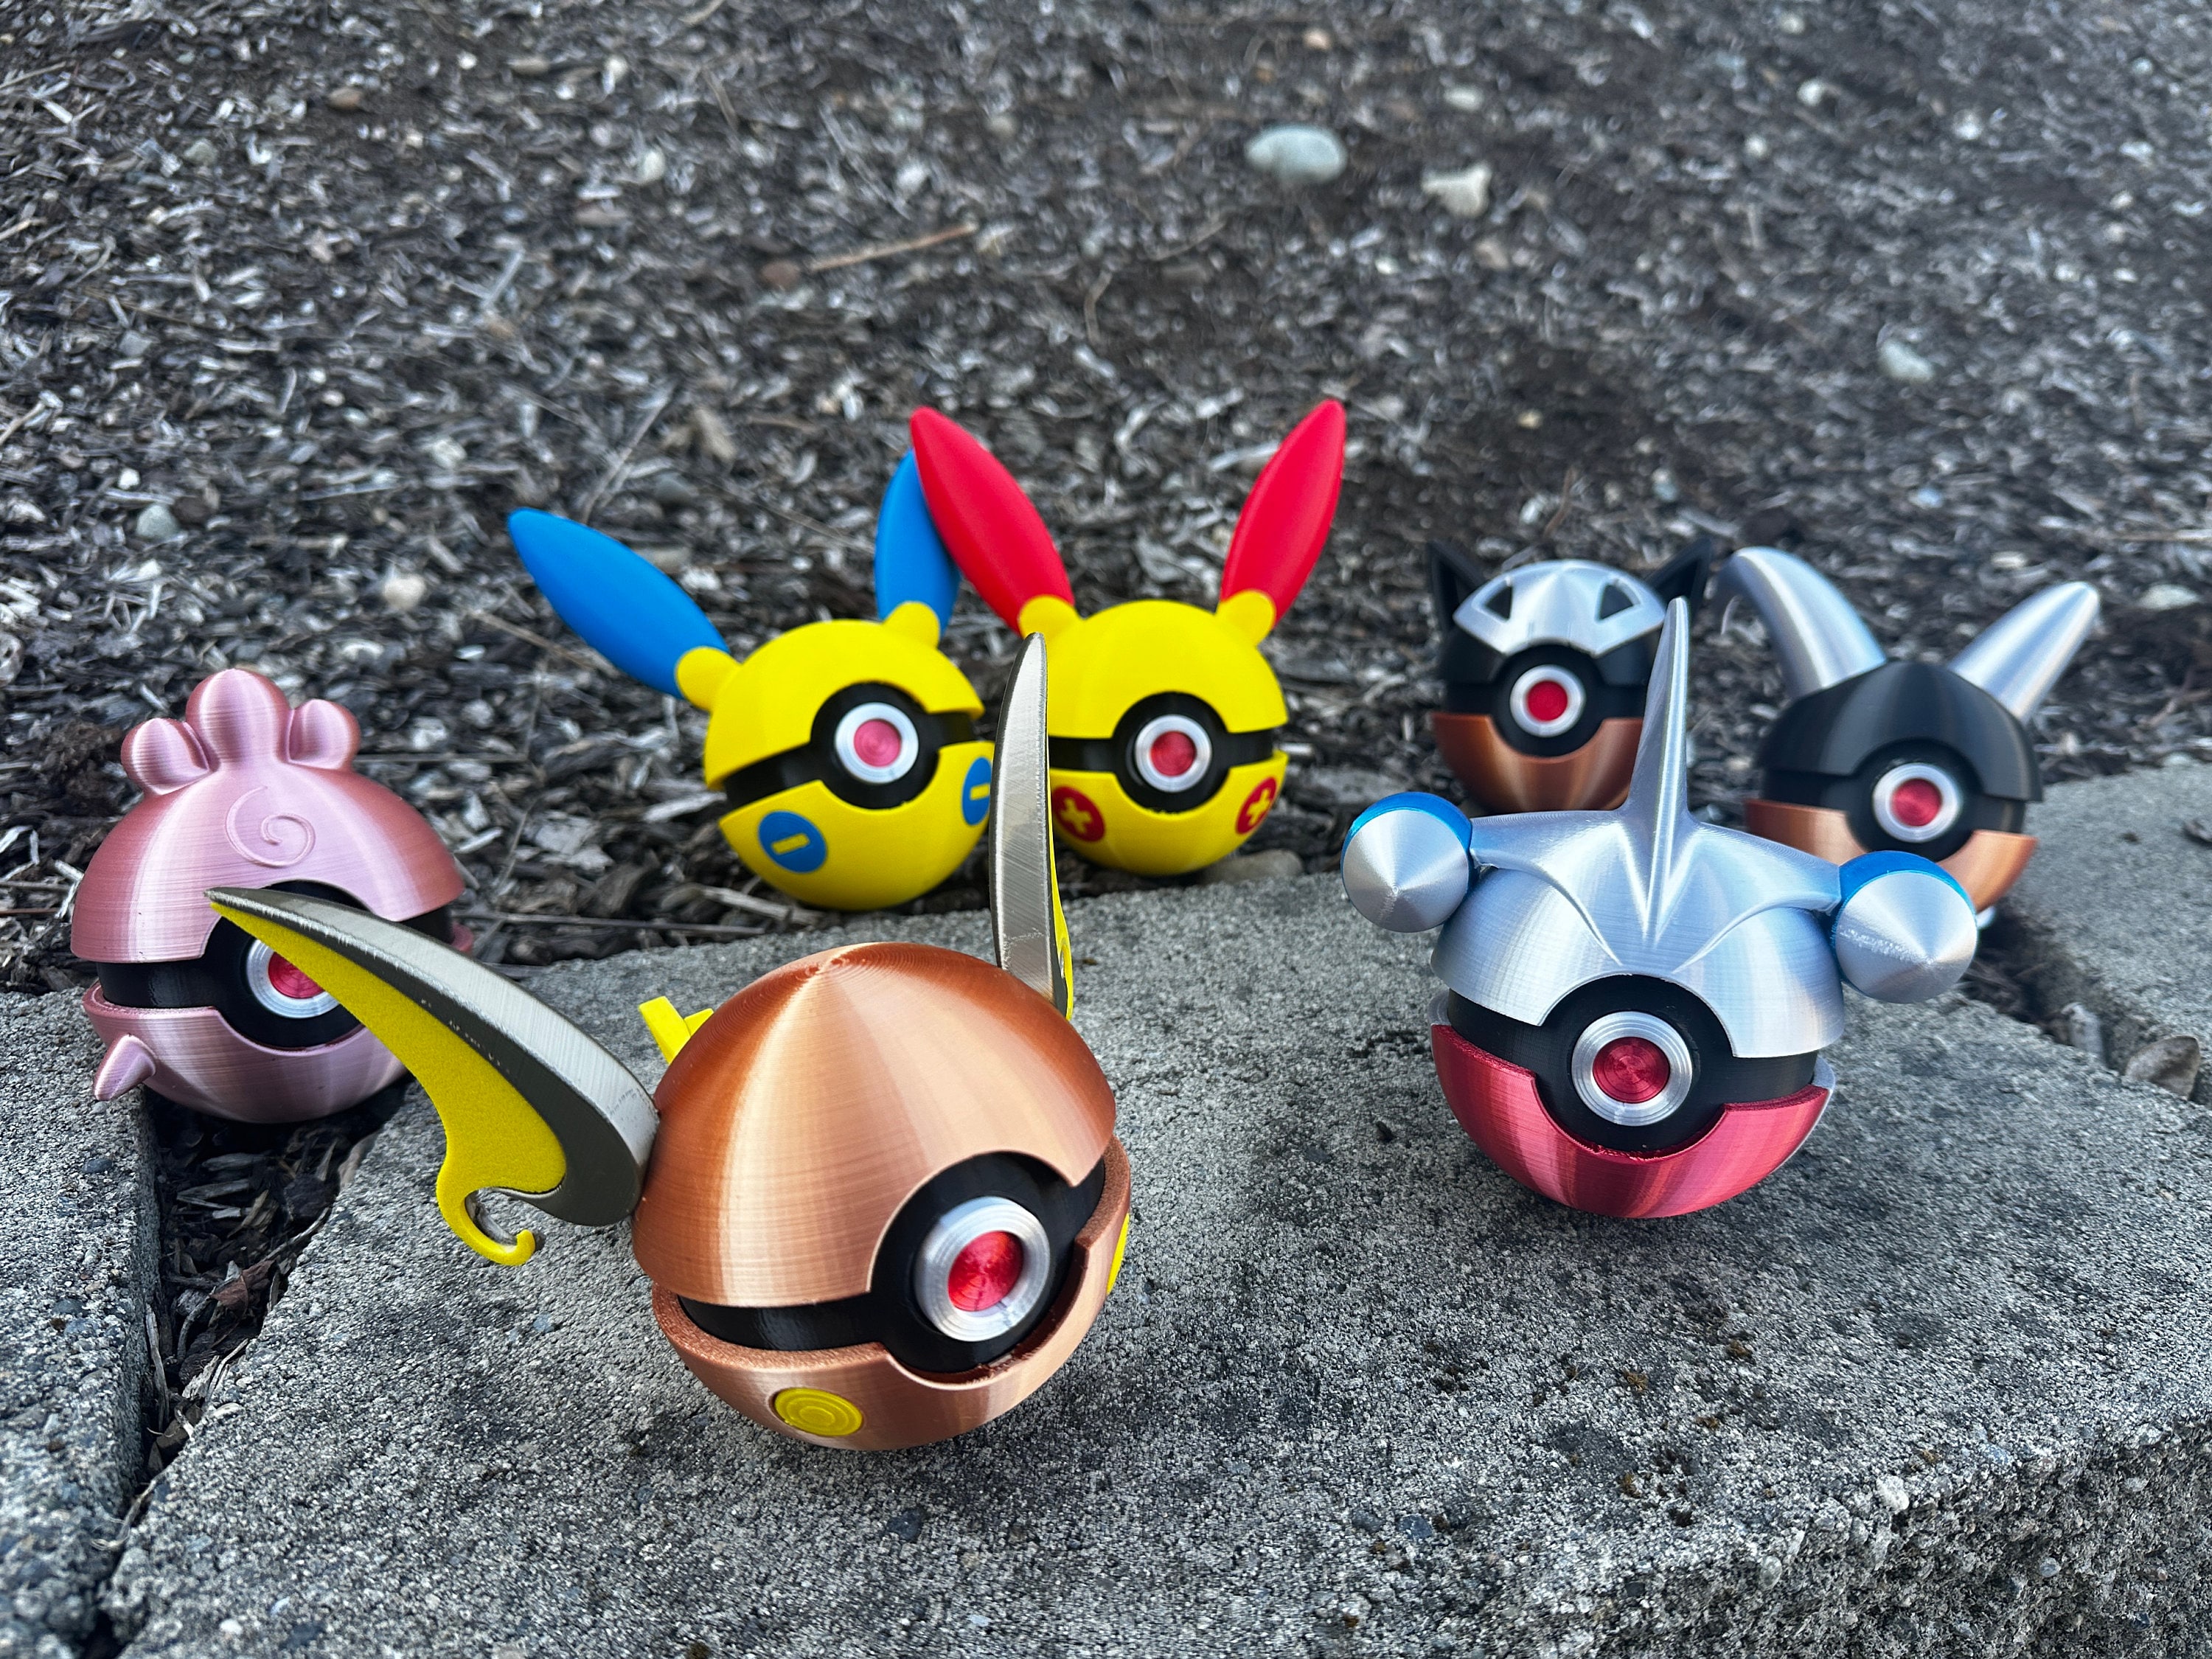 Figuras de Acción de Pokémon Diferentes, Modelo de Bola, Monstruos de  Bolsillo, Regalo de Juguete, Pikachu